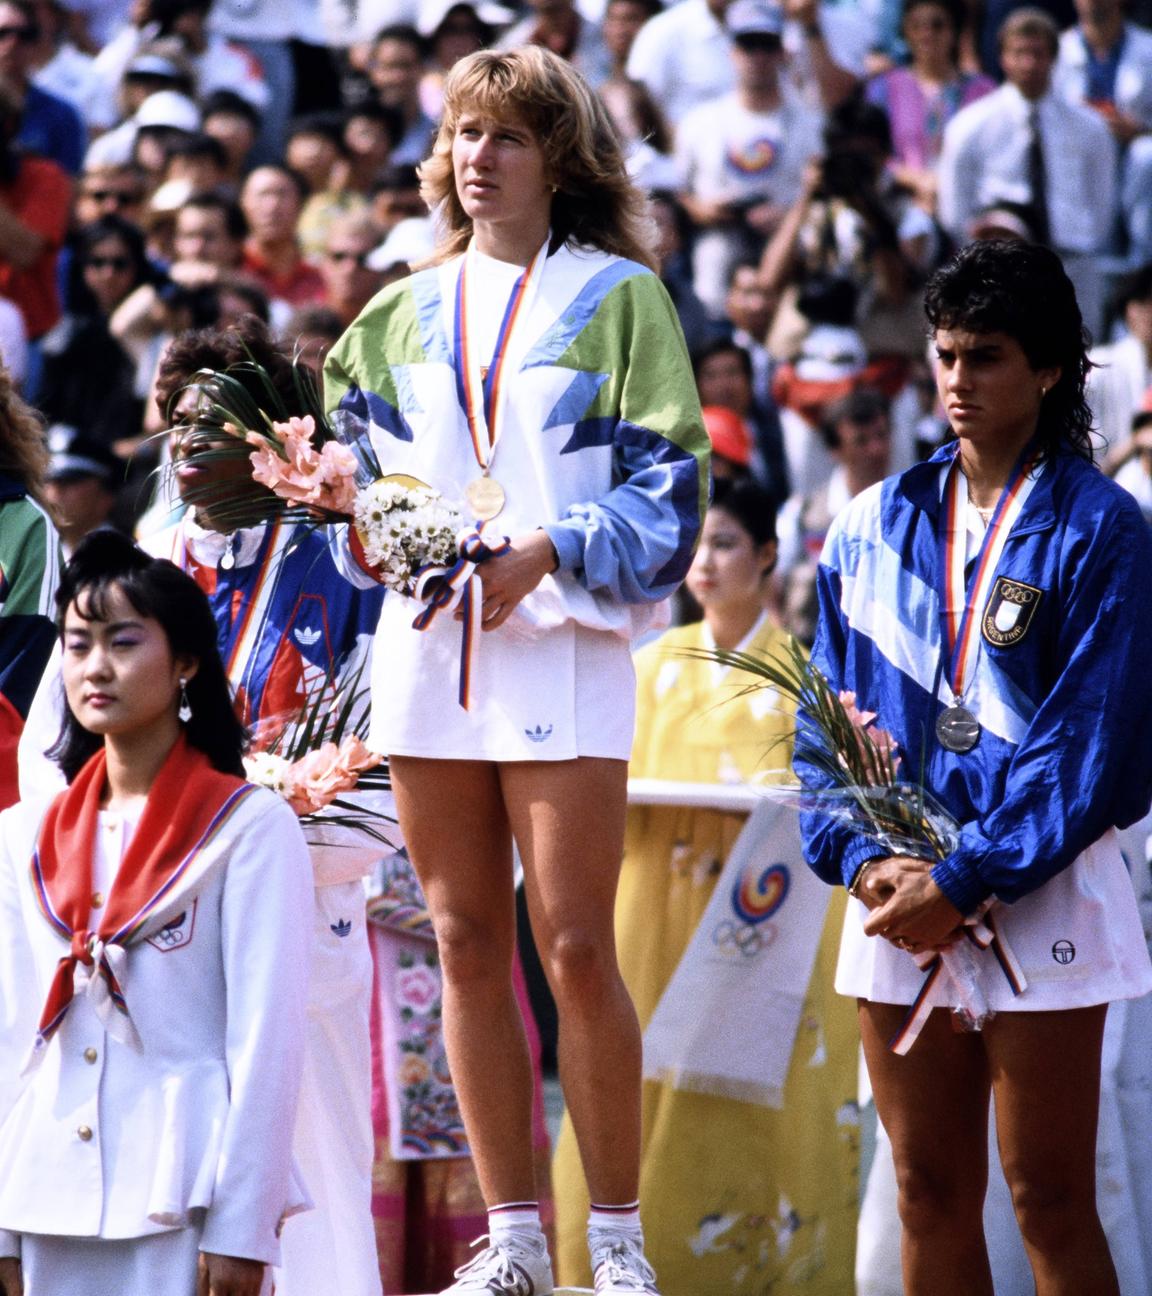 Stefanie Steffi bei der Siegeehrung der Frauen am 01. Oktober 1988 in Seoul.